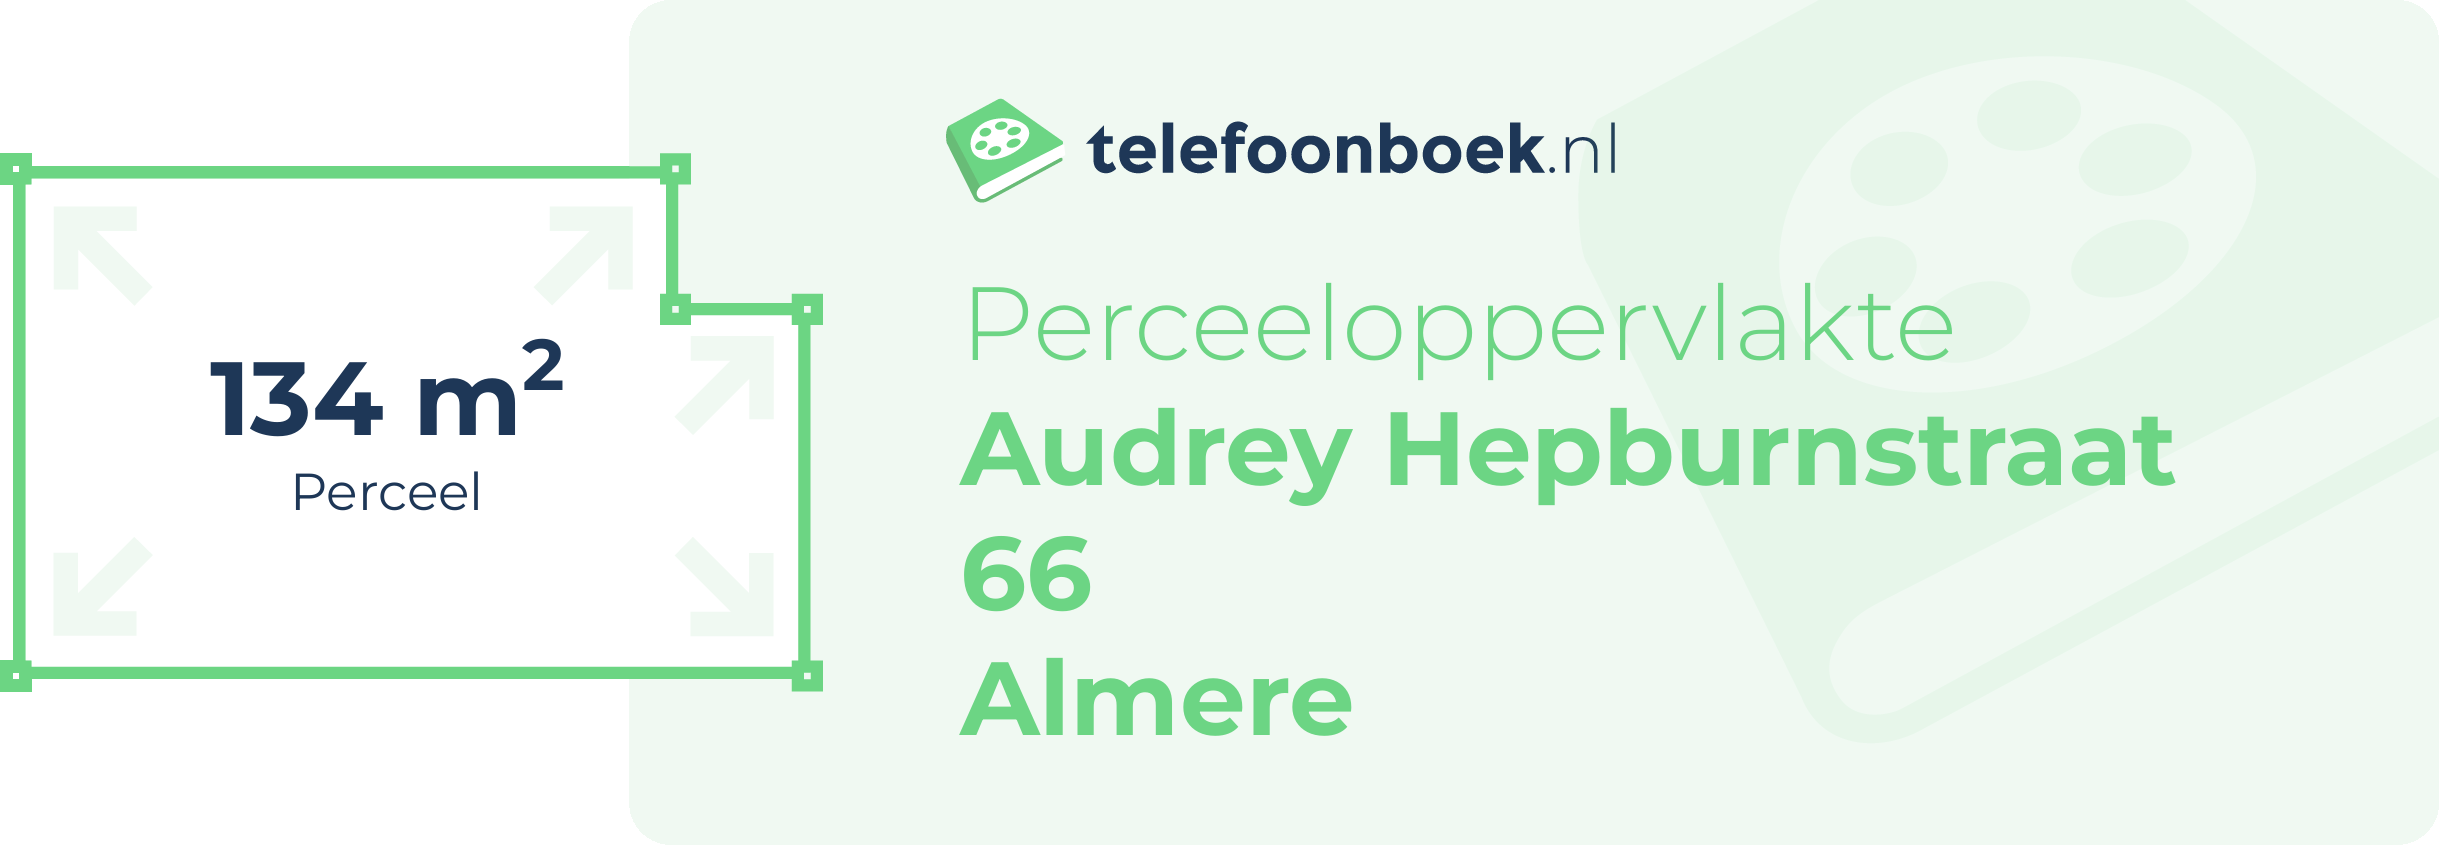 Perceeloppervlakte Audrey Hepburnstraat 66 Almere